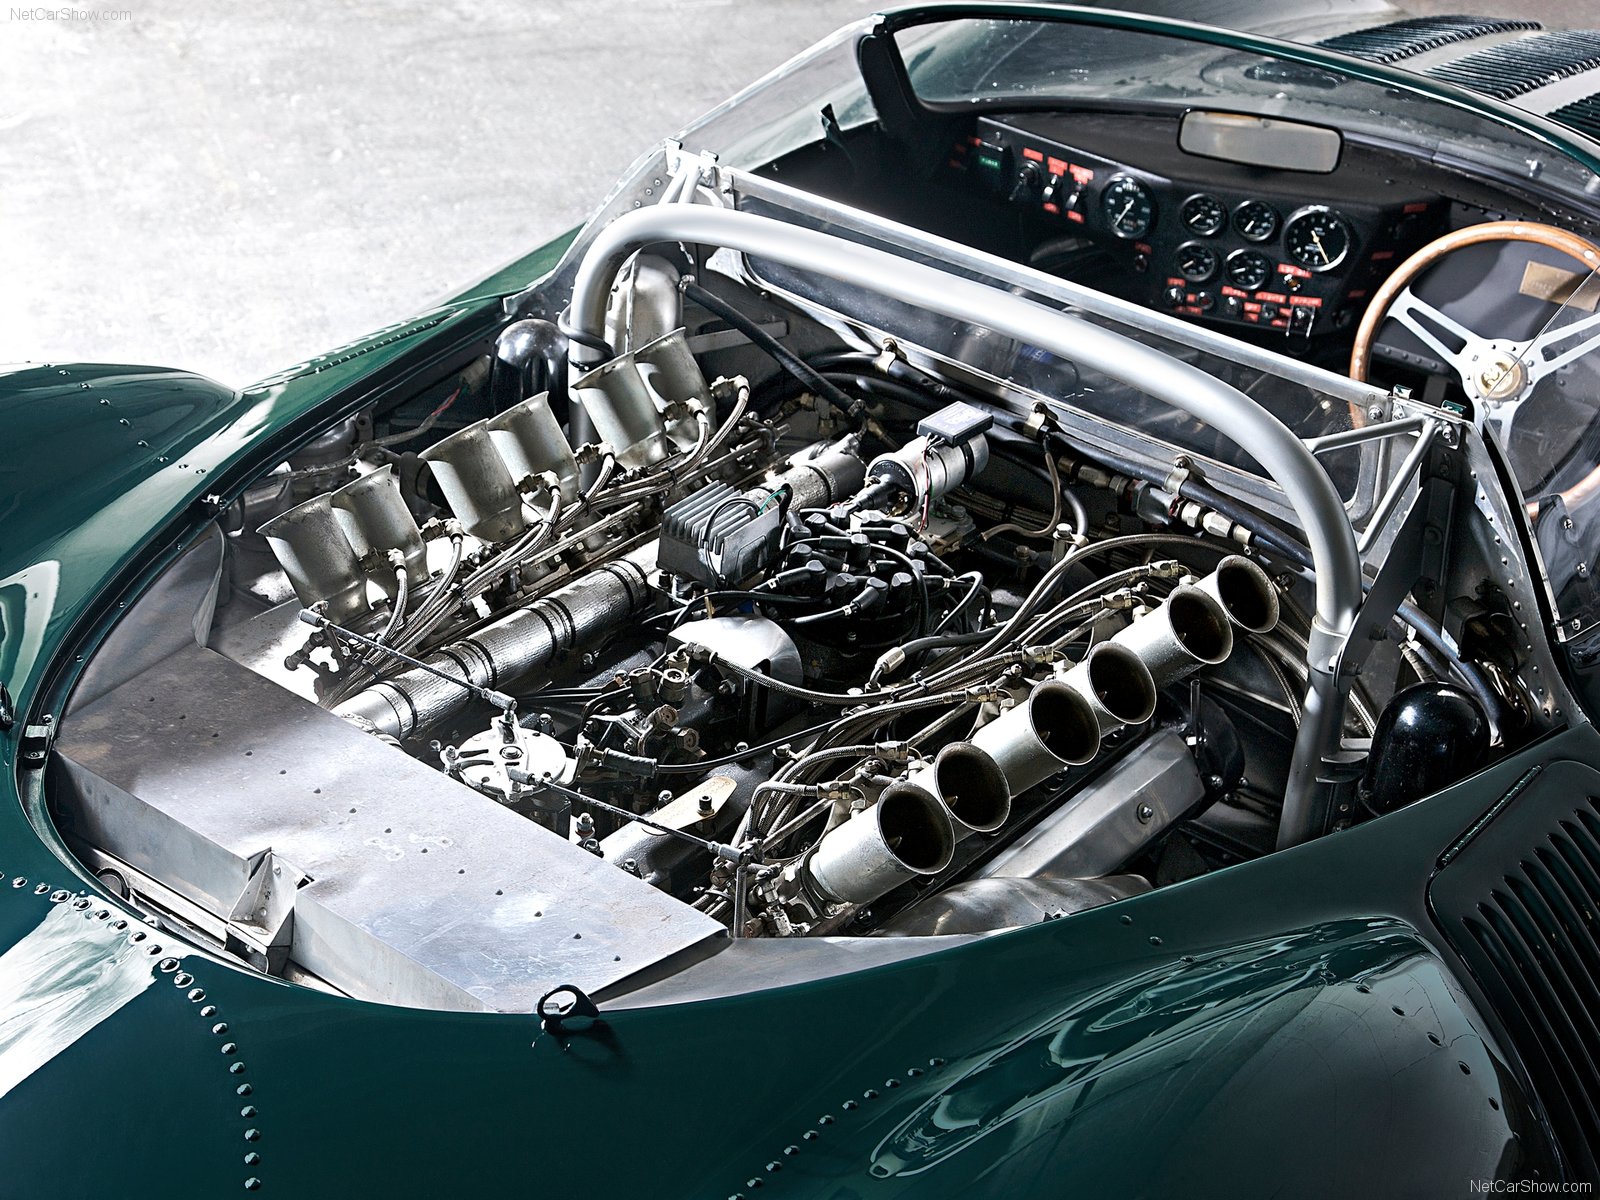 Jaguar XJ13 V12 engine